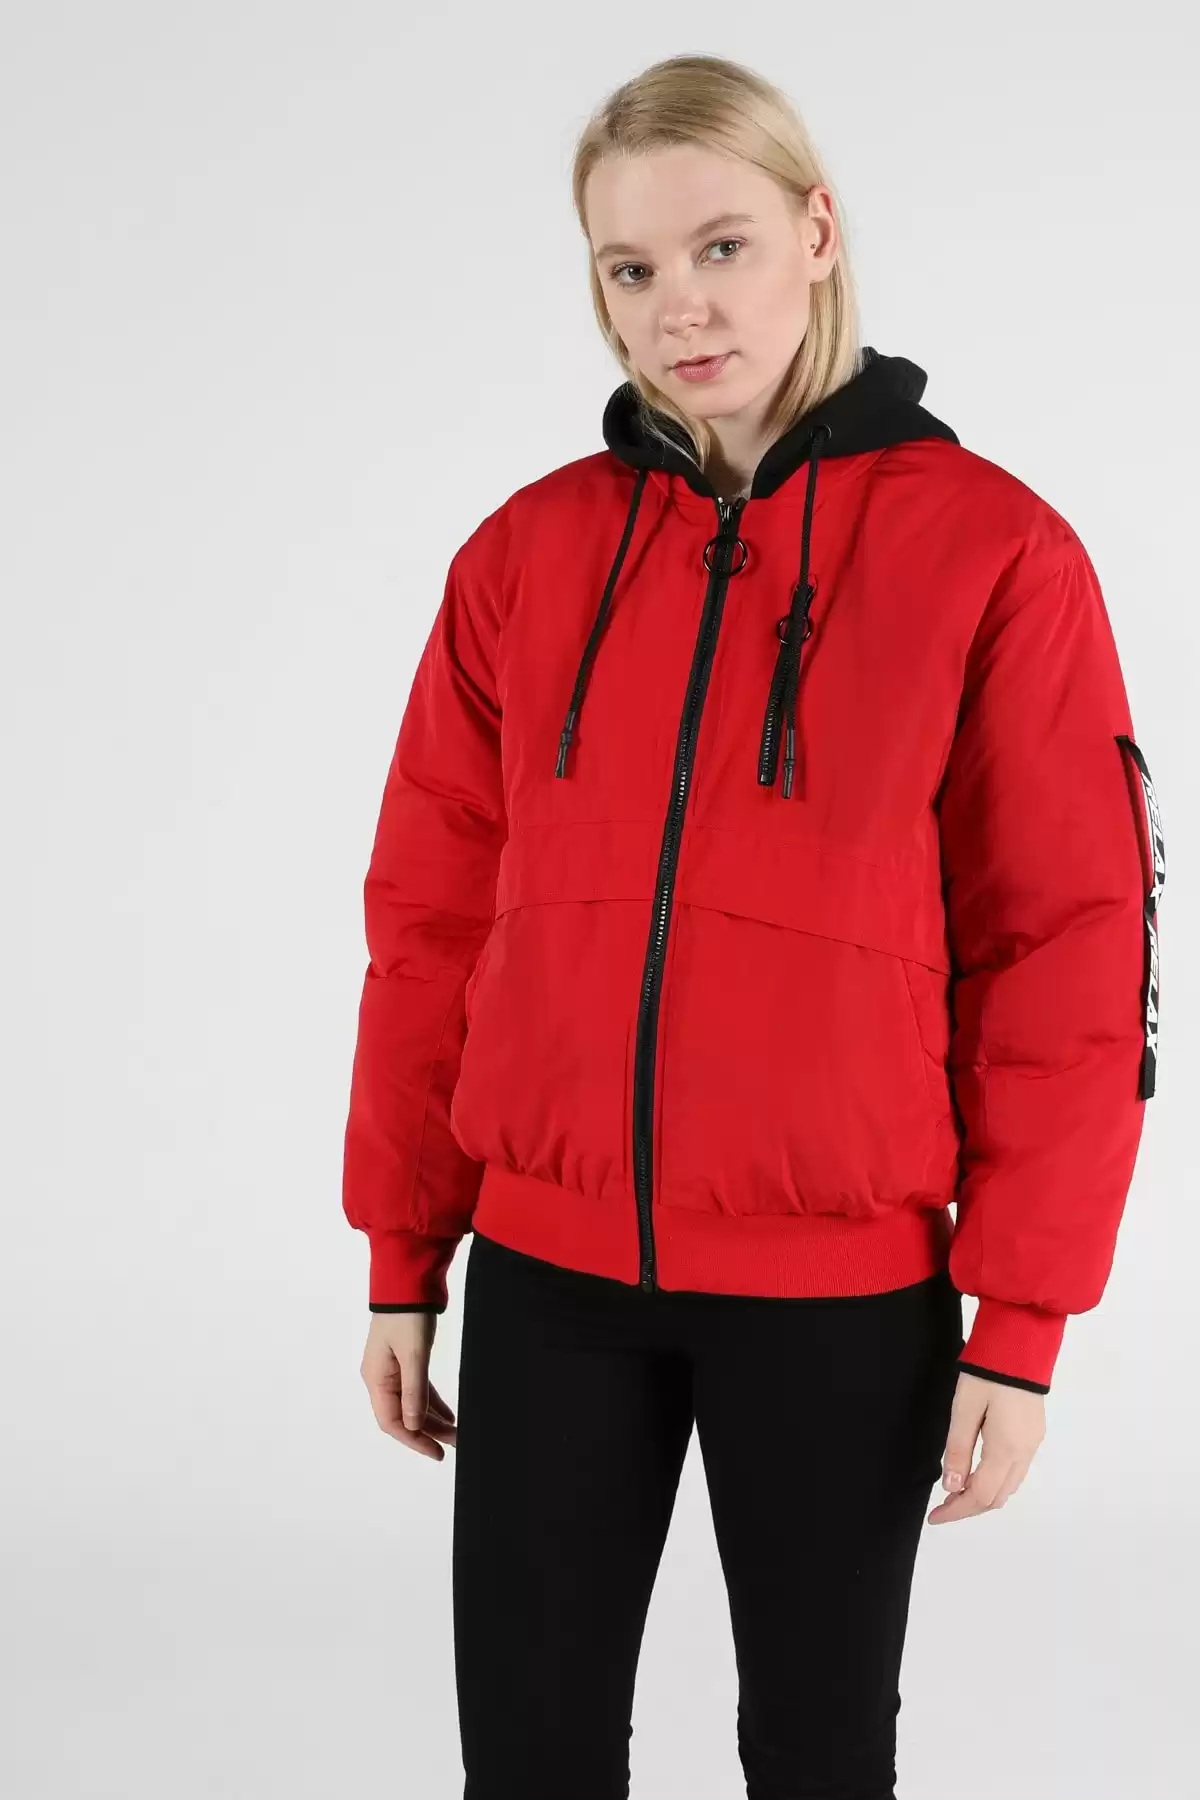 کاپشن و پالتو زنانه برند   Colin’s(کولینز) به رنگ  قرمز مدل  زمستانی